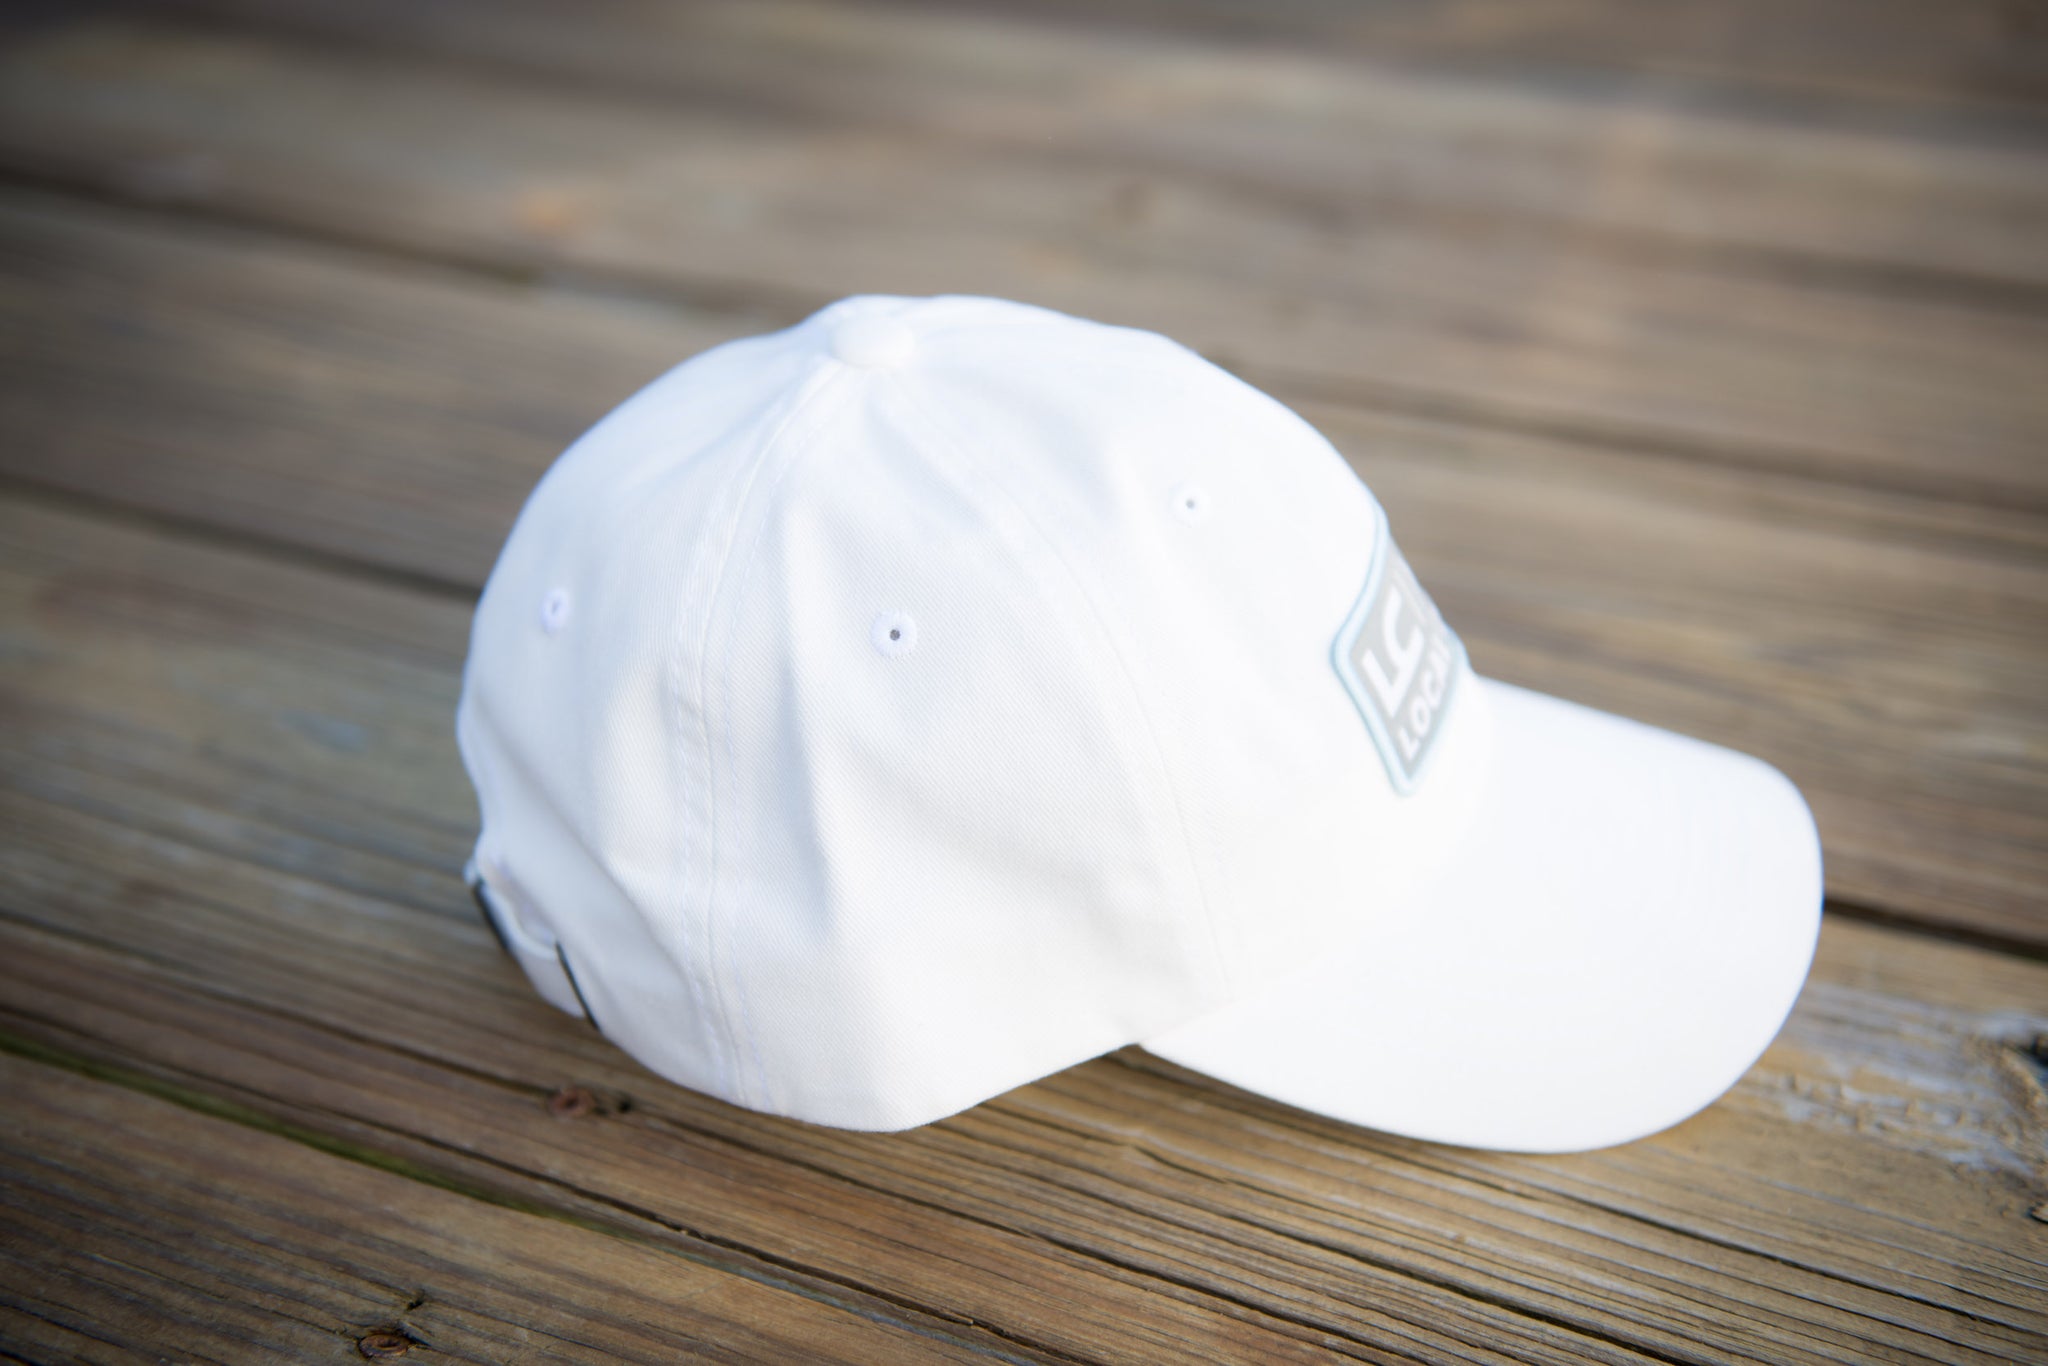 Grey Local Coast™ Logo Twill Hat